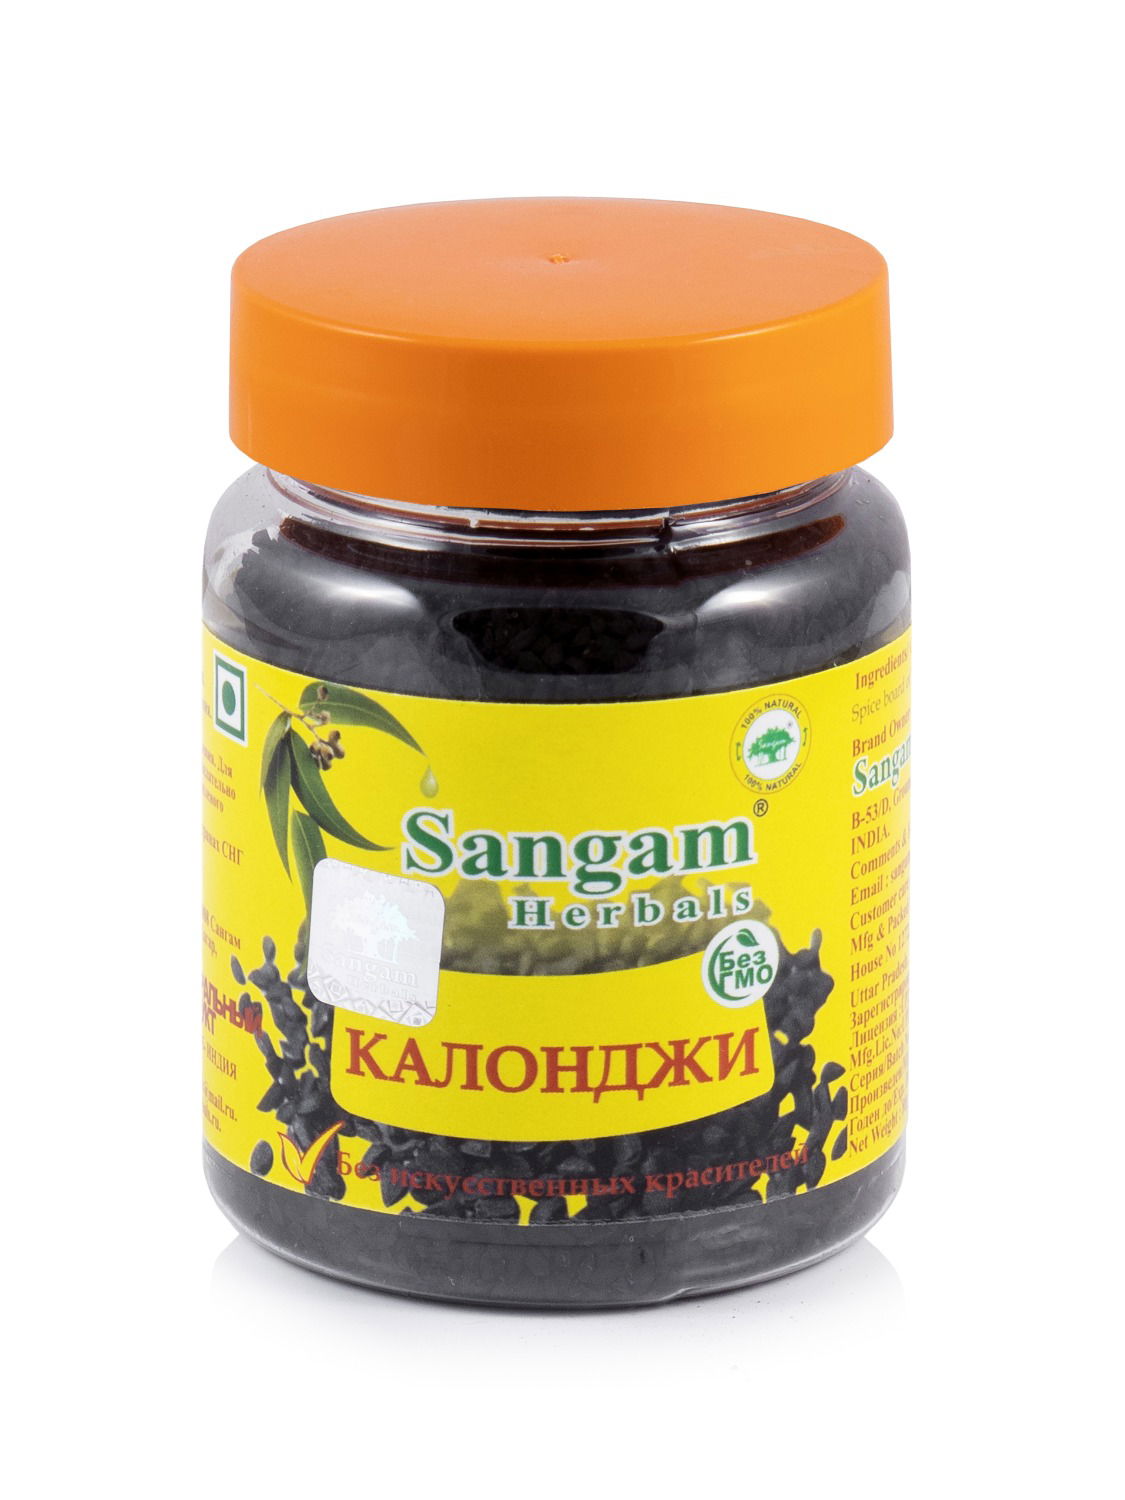 Калонджи (черный тмин) Sangam Herbals (80 г). 